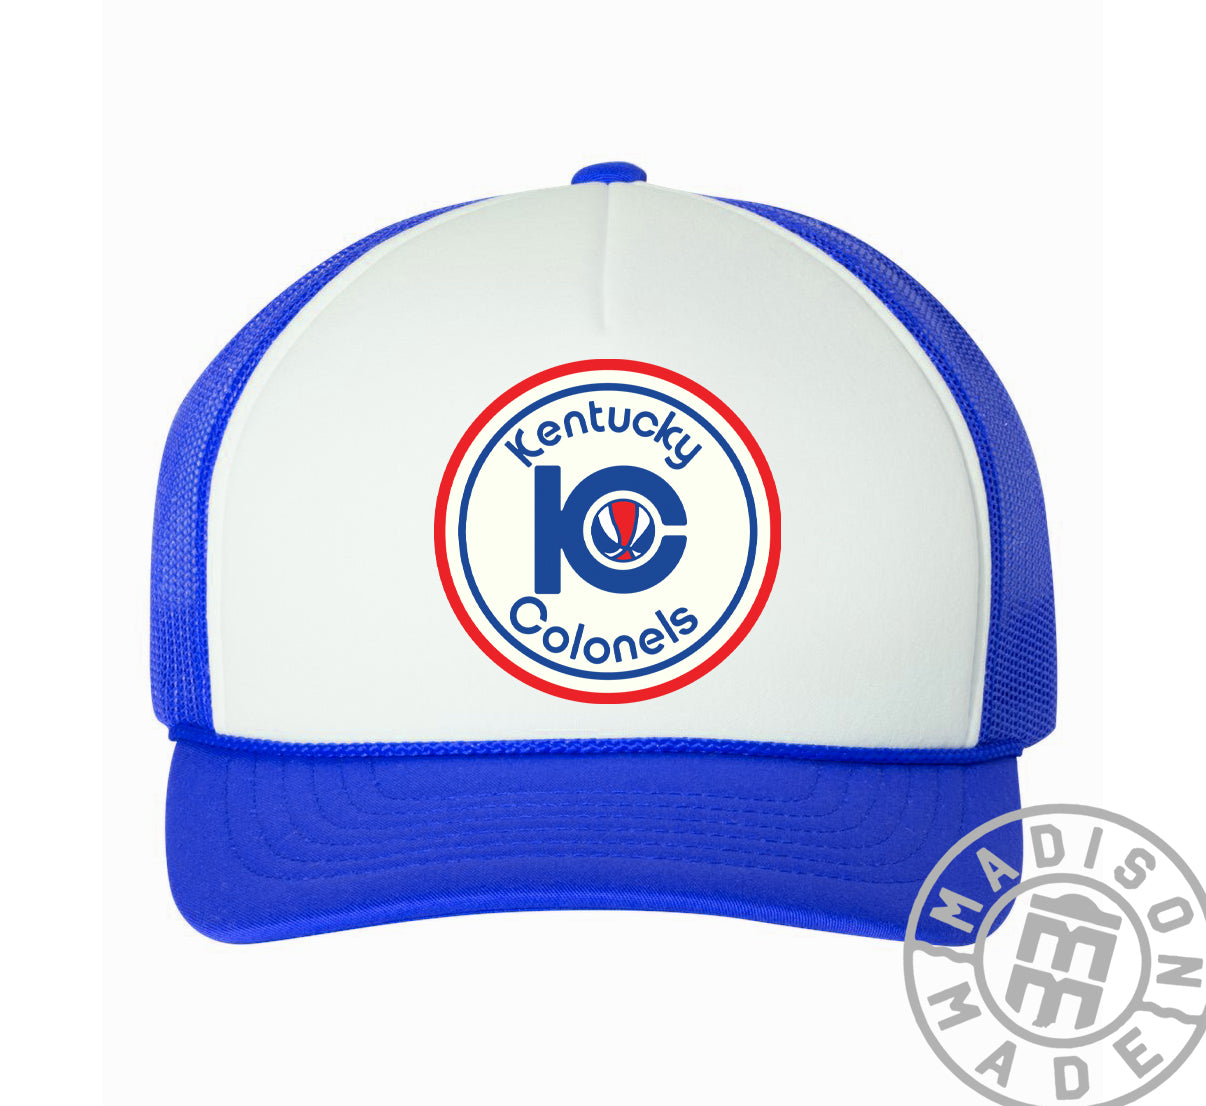 Kentucky Colonels Blue Trucker Hat